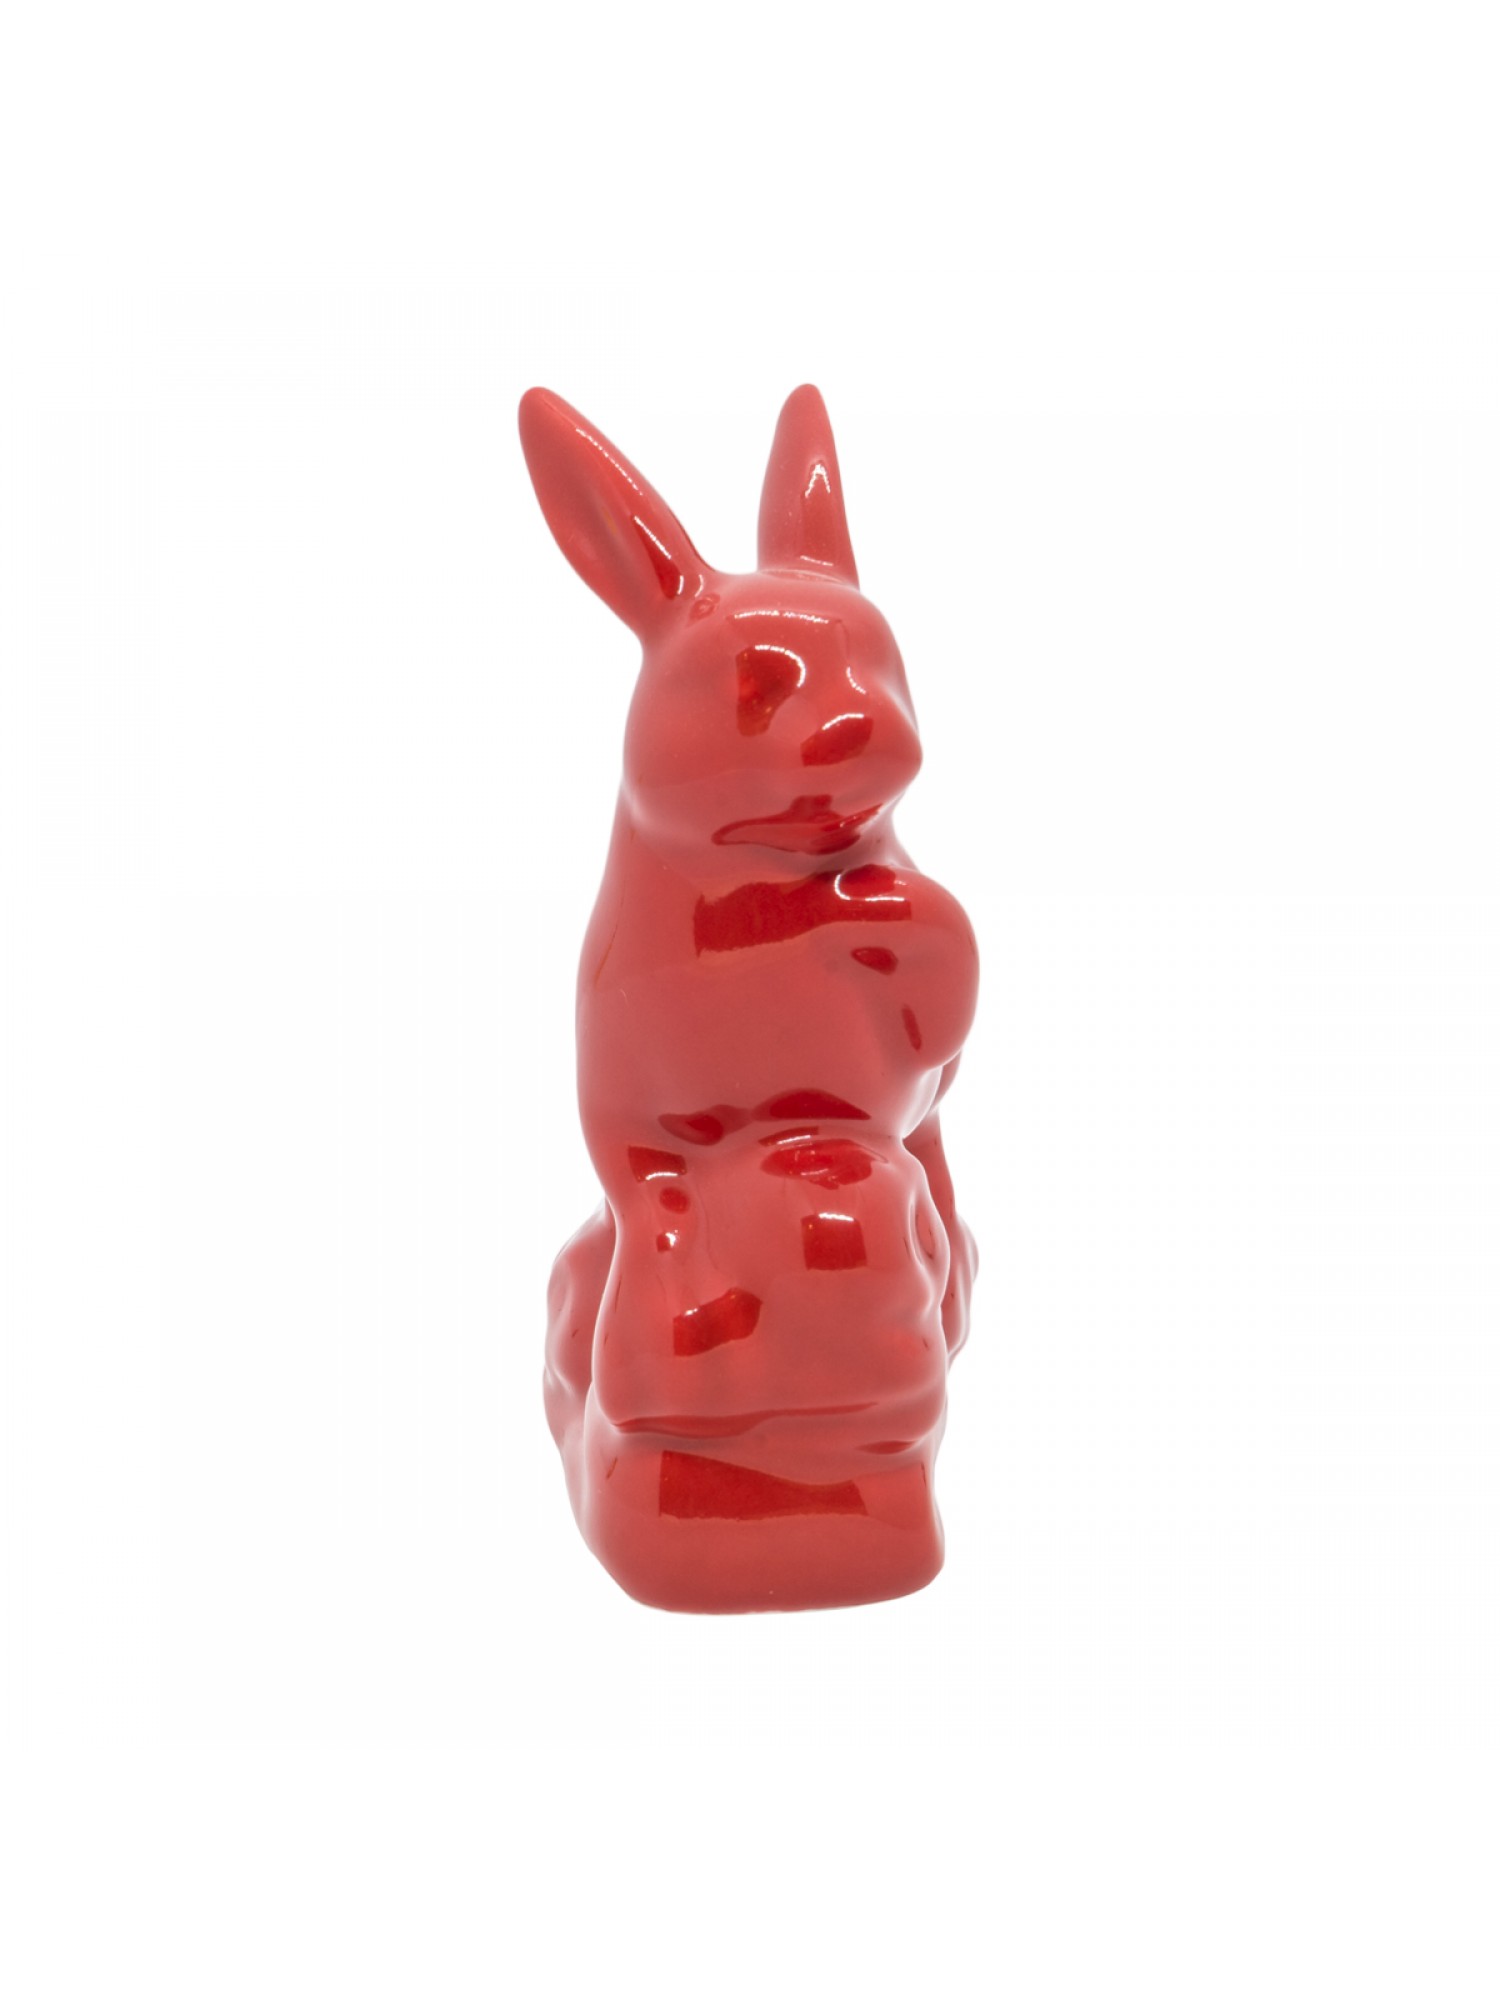 Статуэтка Кролик красный маленький